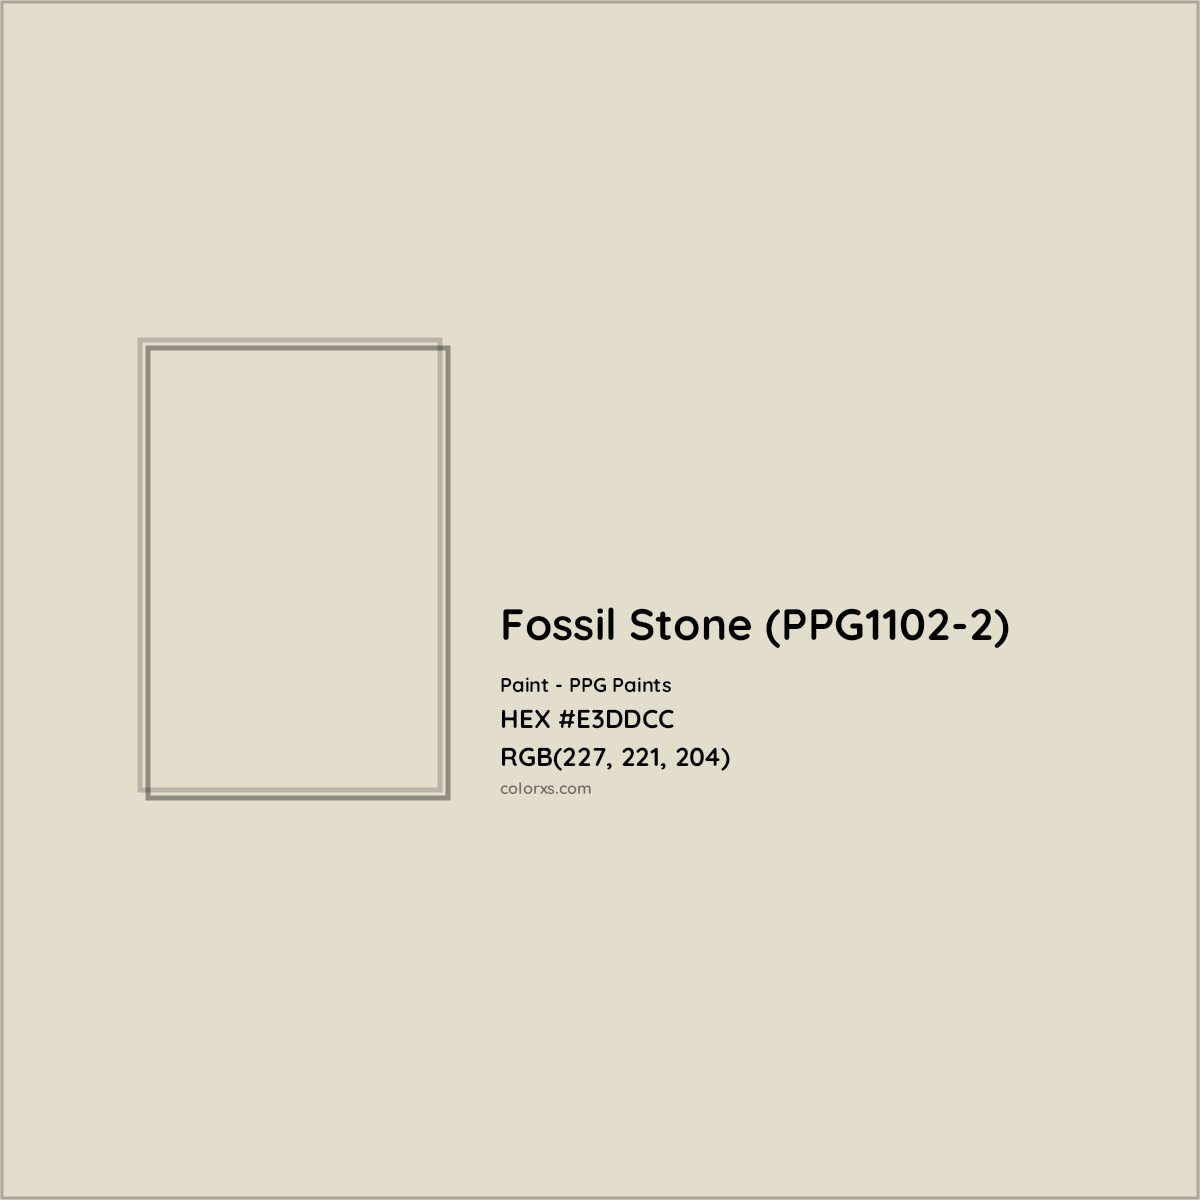 HEX #E3DDCC Fossil Stone (PPG1102-2) Paint PPG Paints - Color Code